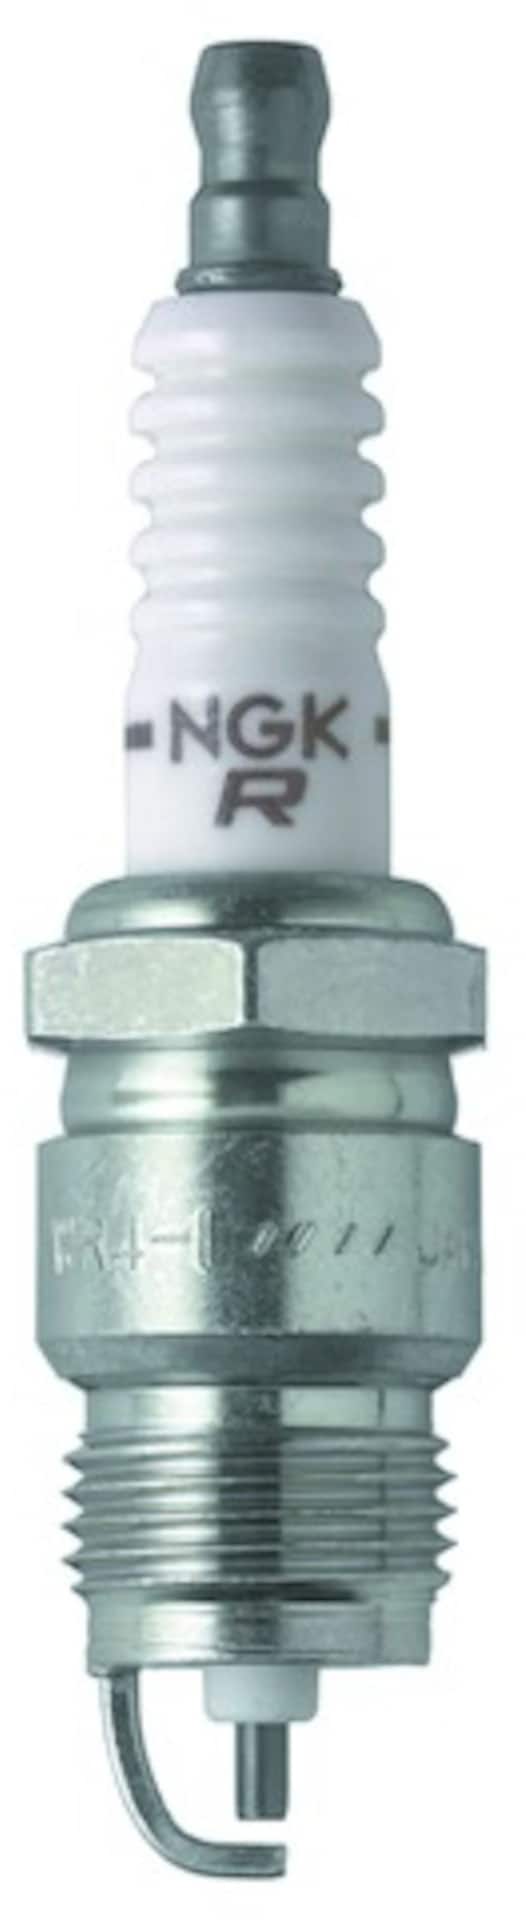 NGK G-Power Platinum Spark Plug